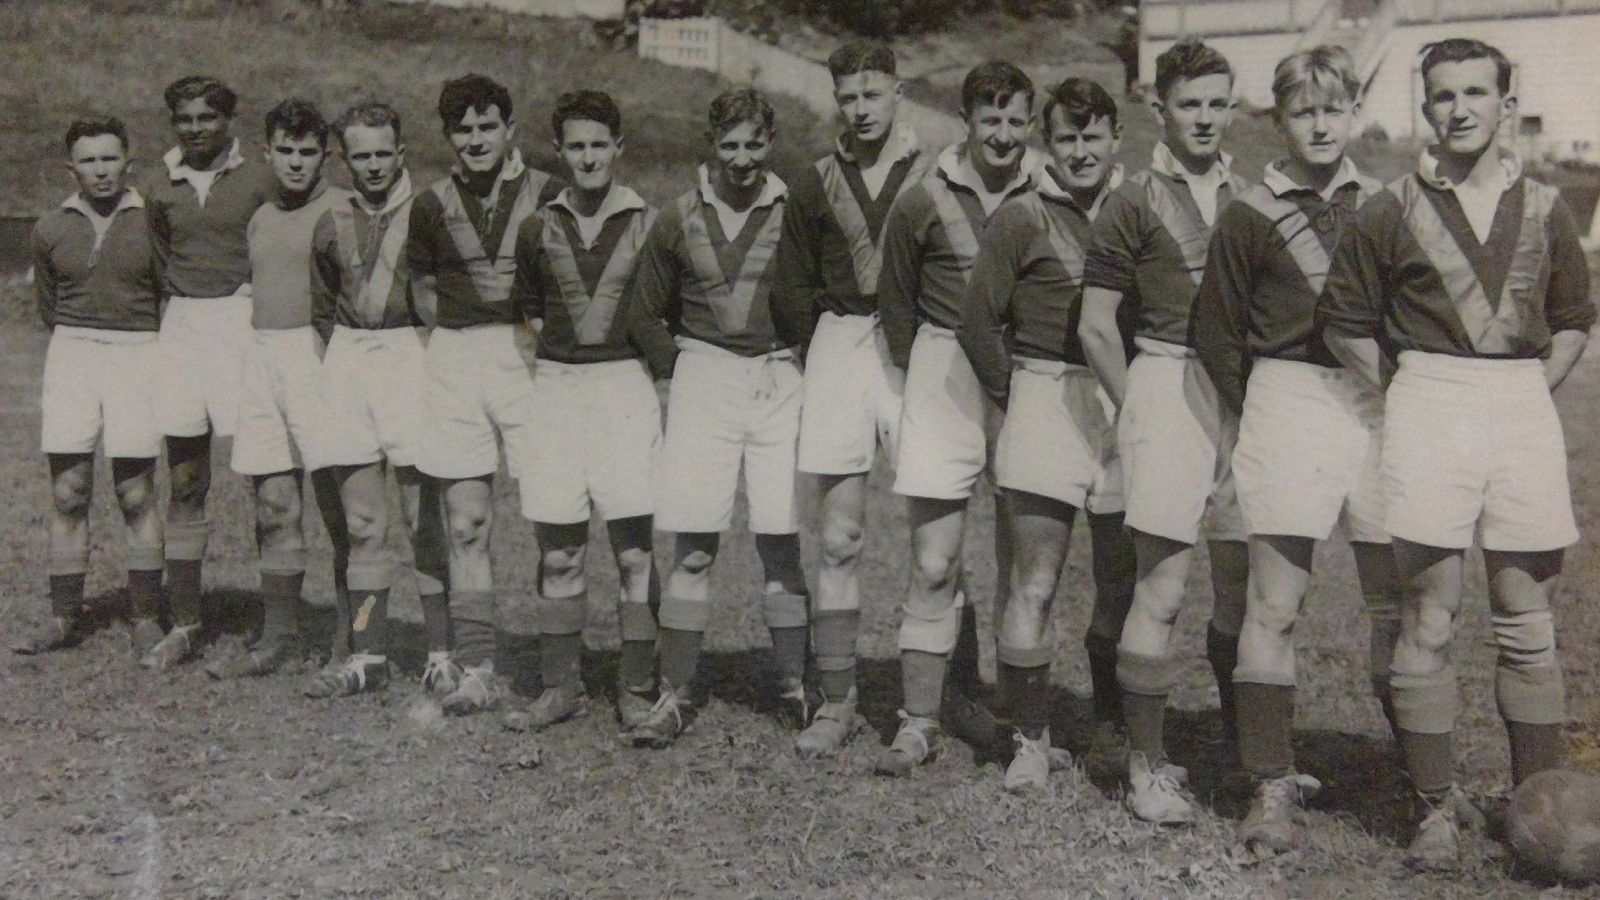 VUWAFC team in 1946